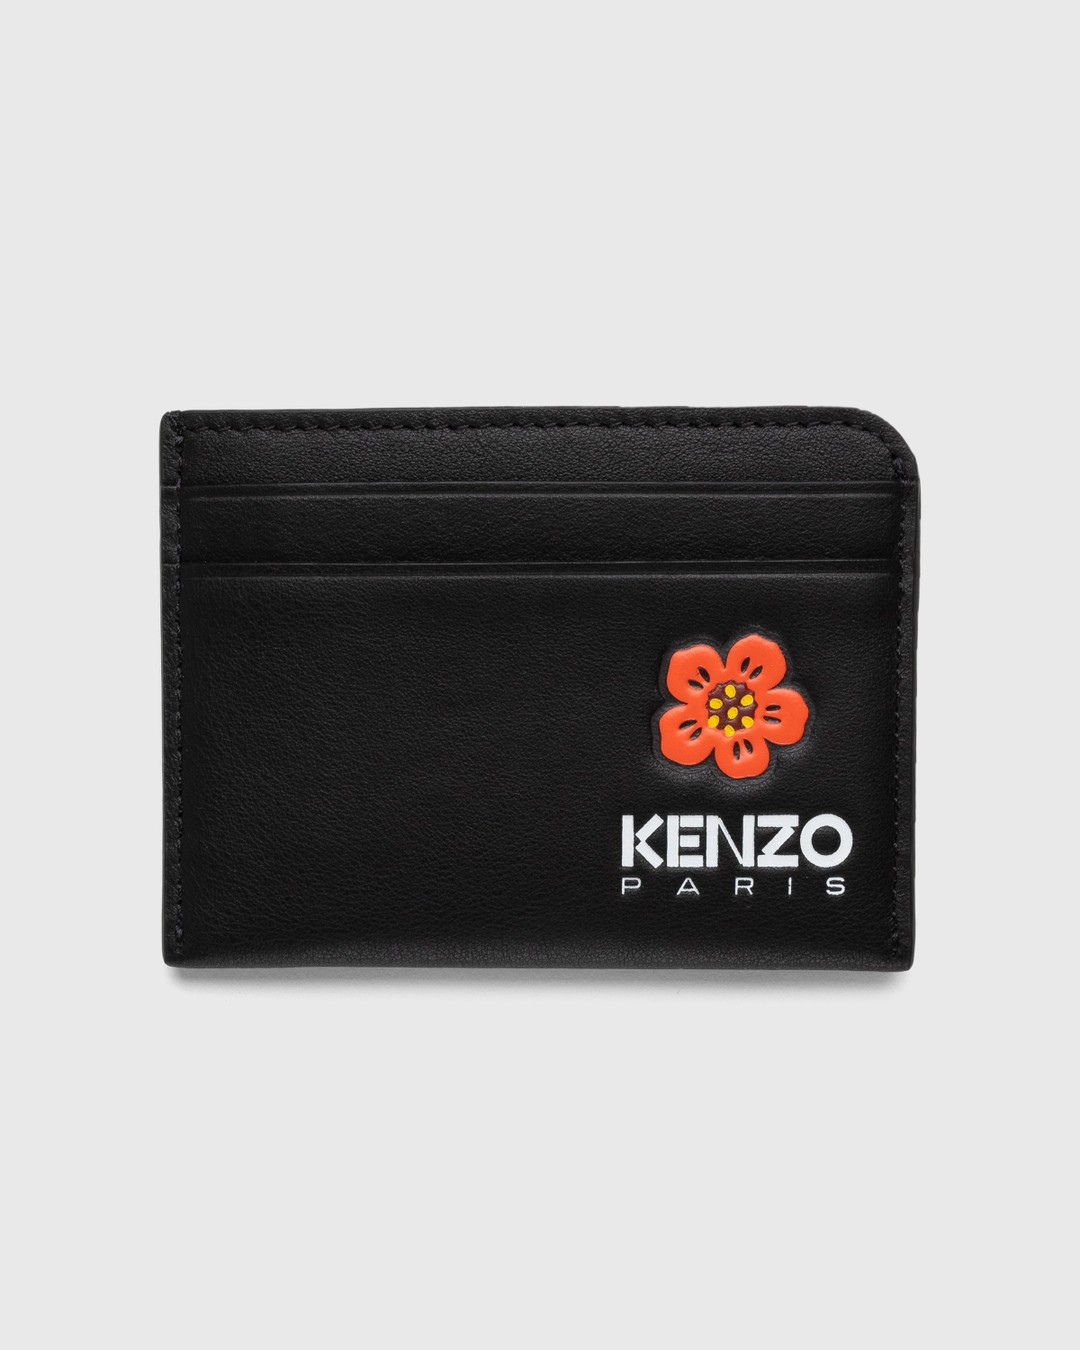 Kenzo – Crest Cardholder Black - Card Holders - Black - Image 1